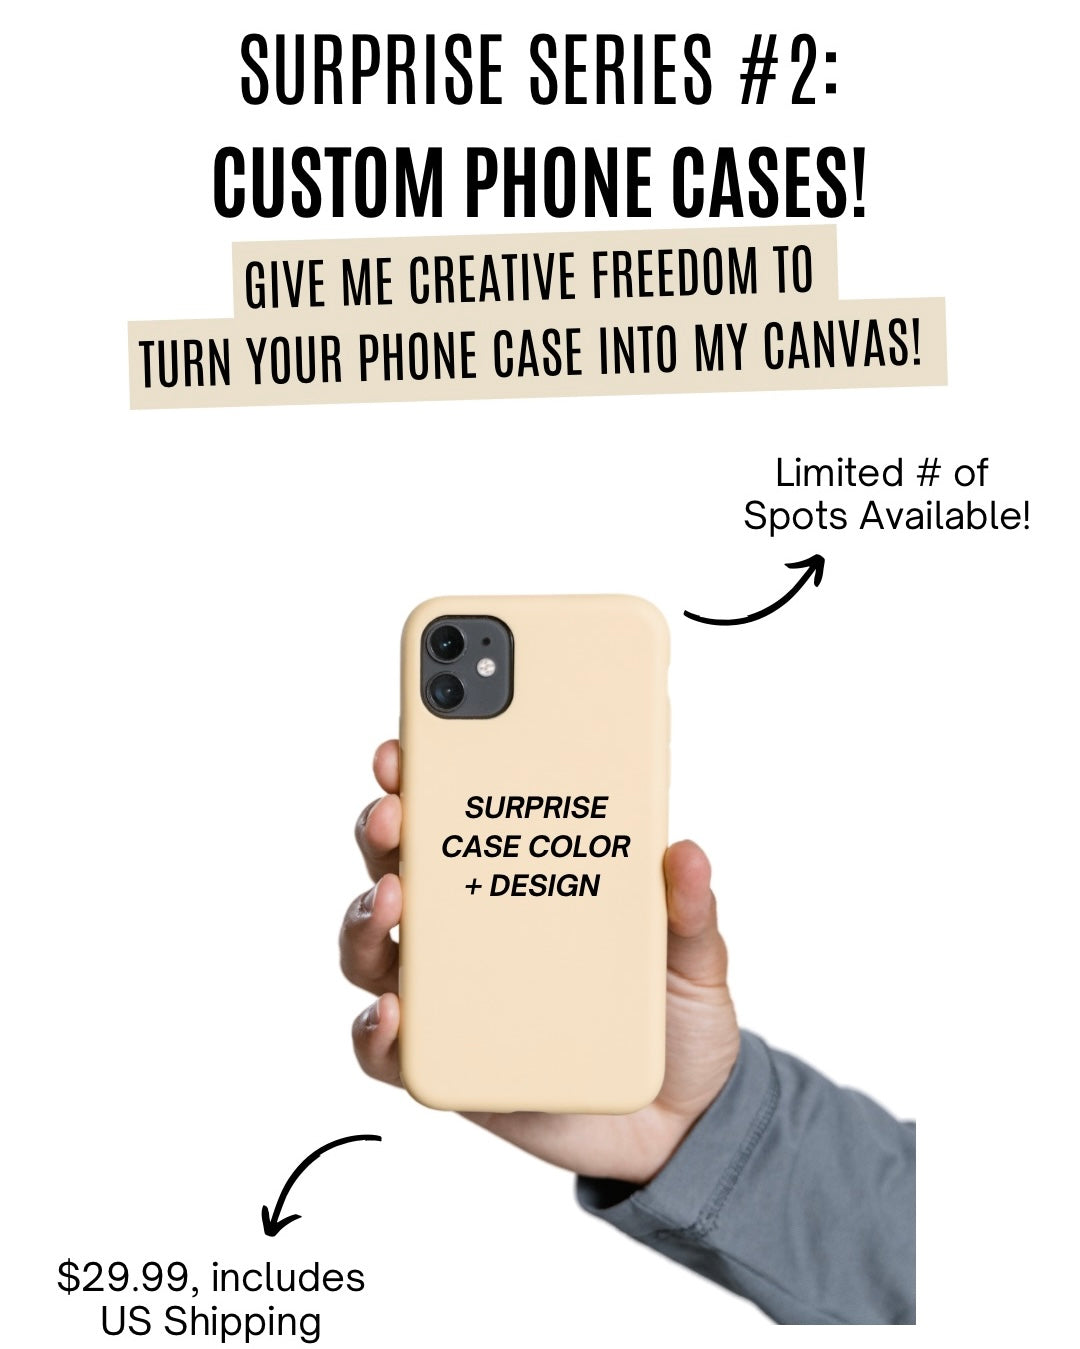 Surprise Series #2 - CUSTOM PHONE CASE